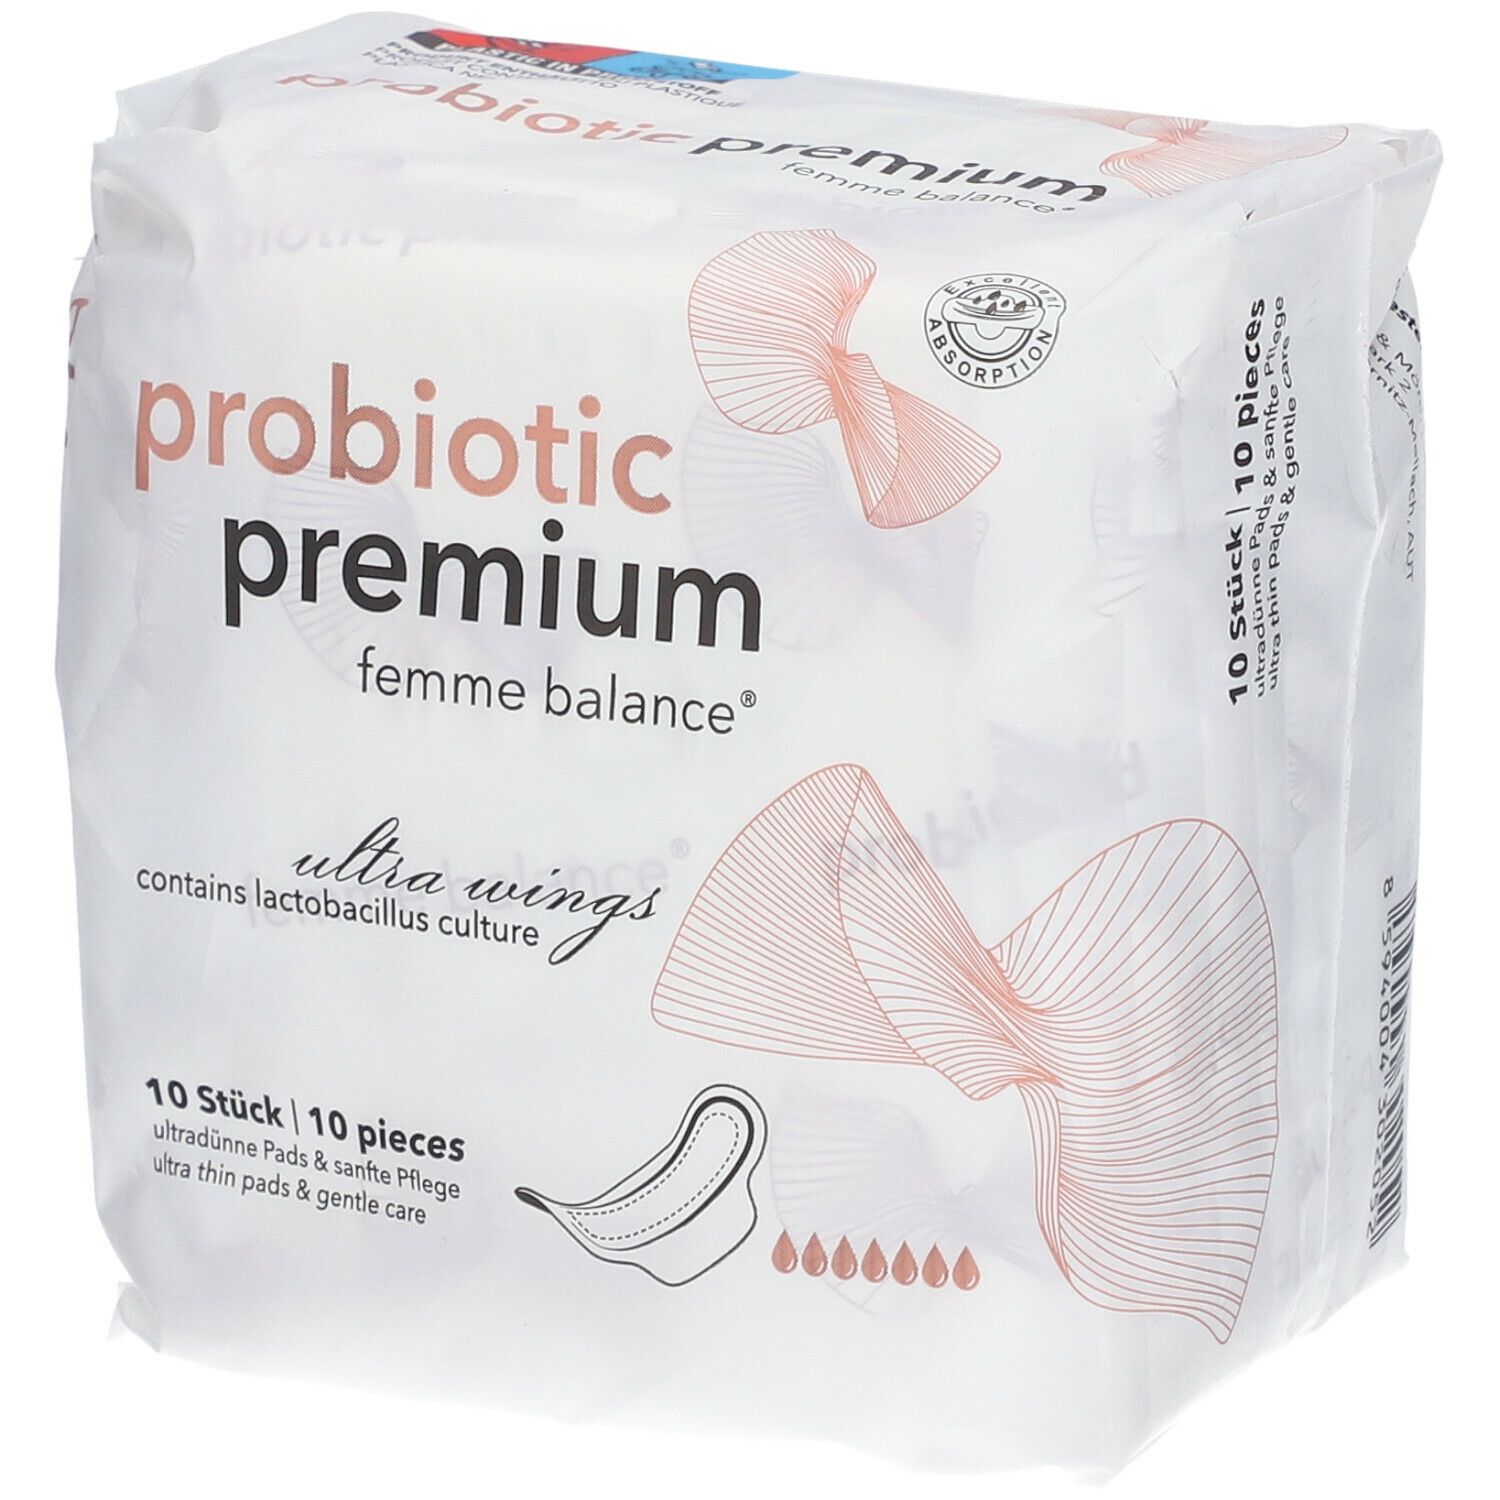 probiotic premium femme balance®